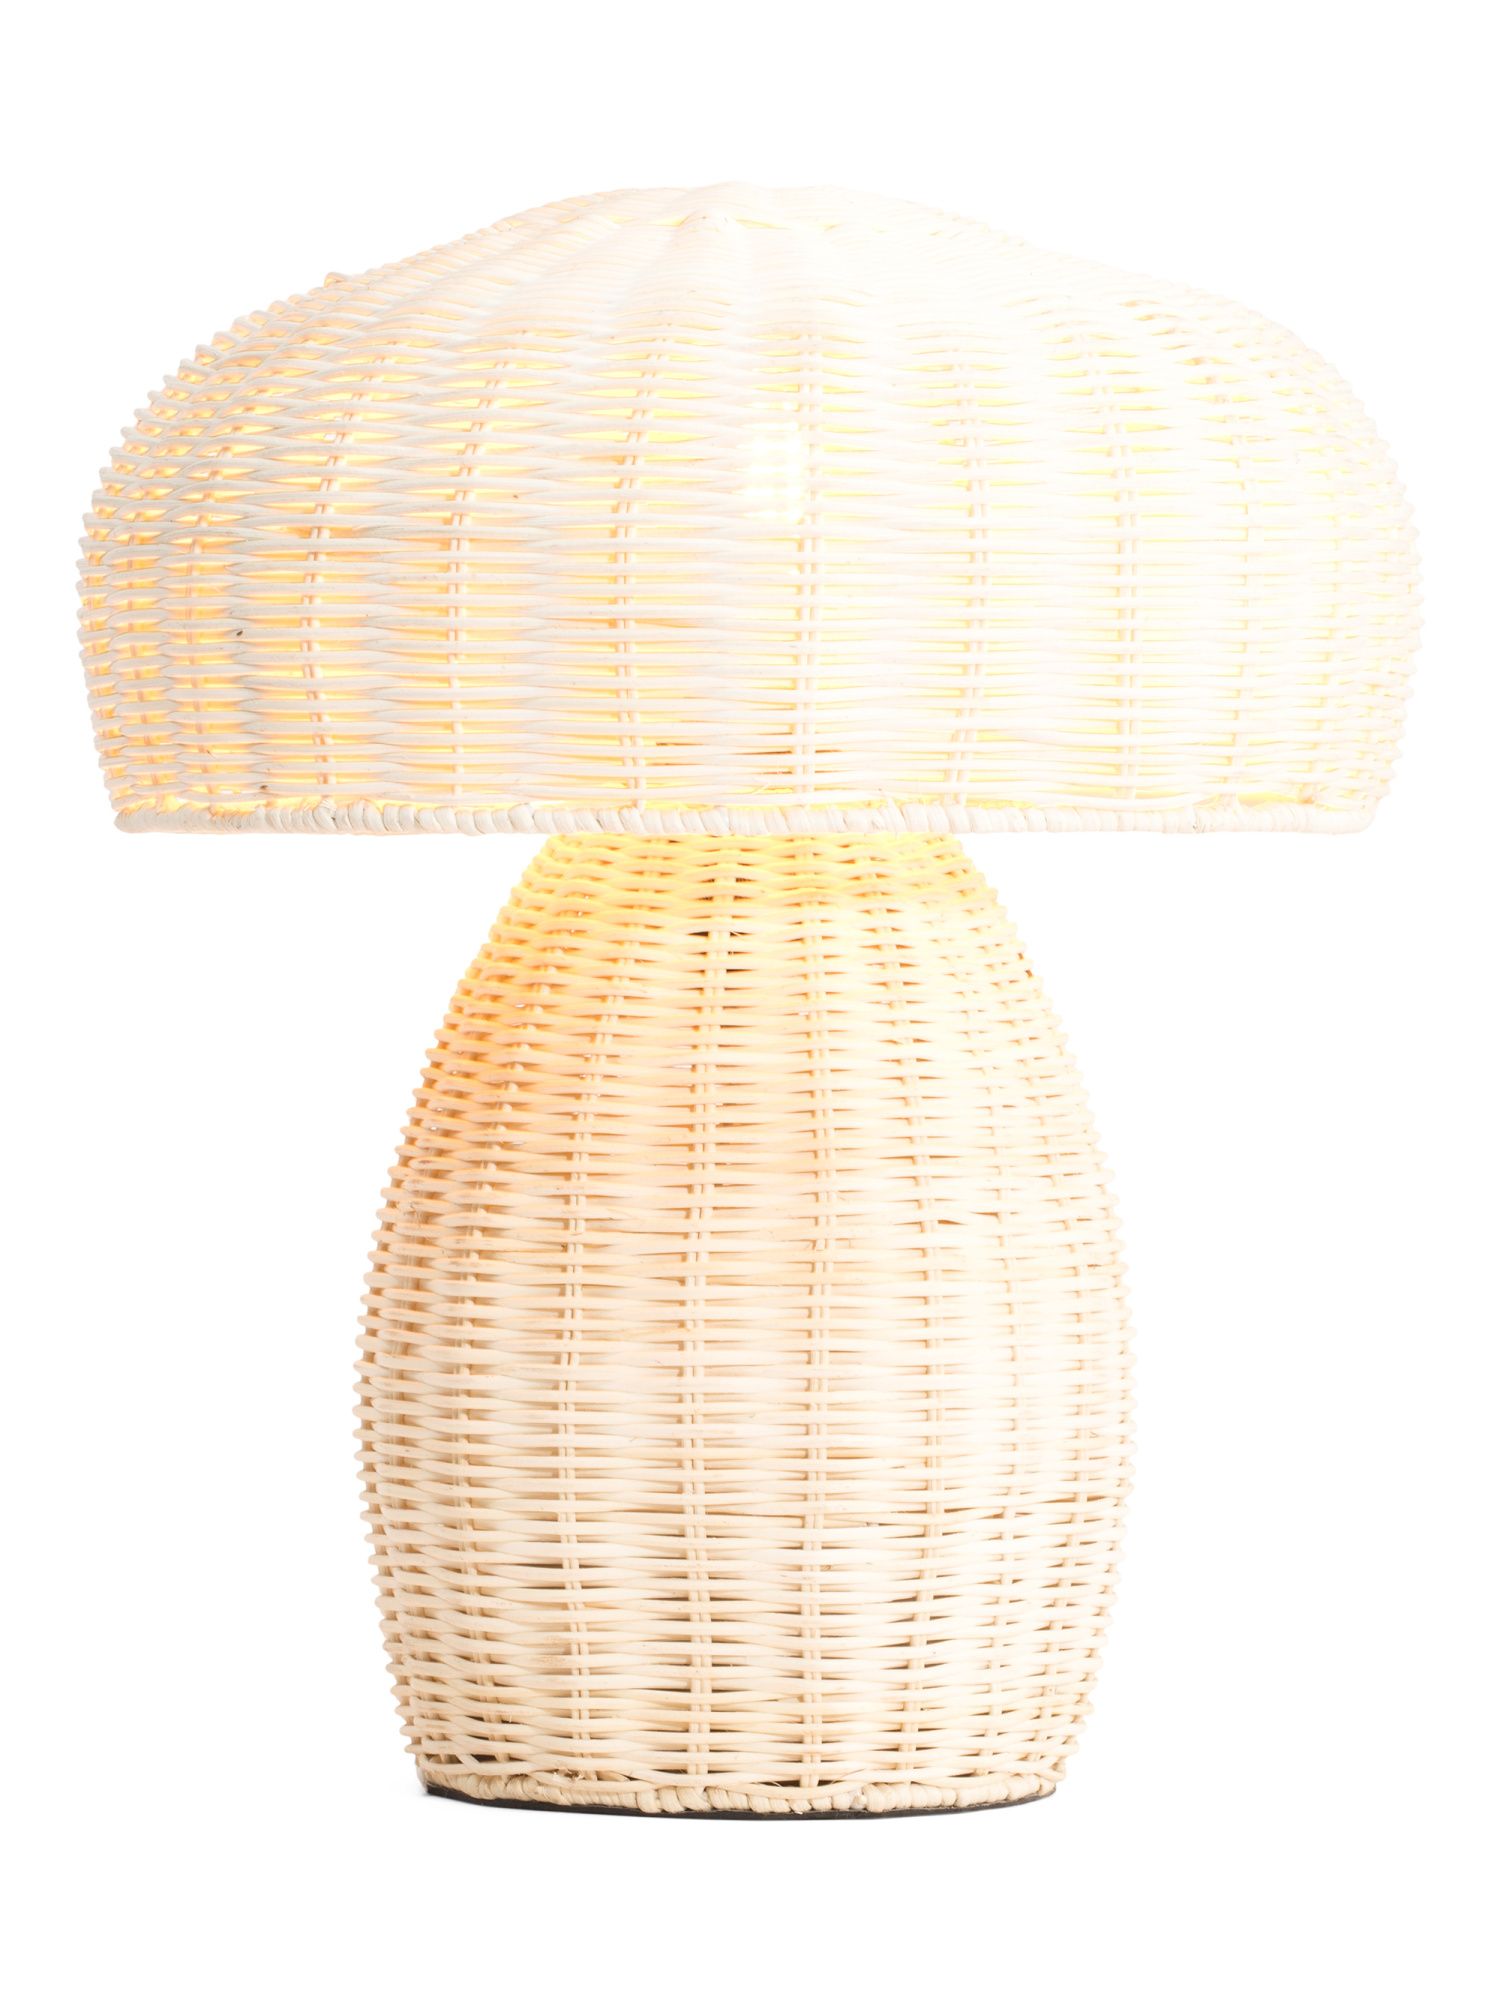 18in Mushroom Lamp | TJ Maxx